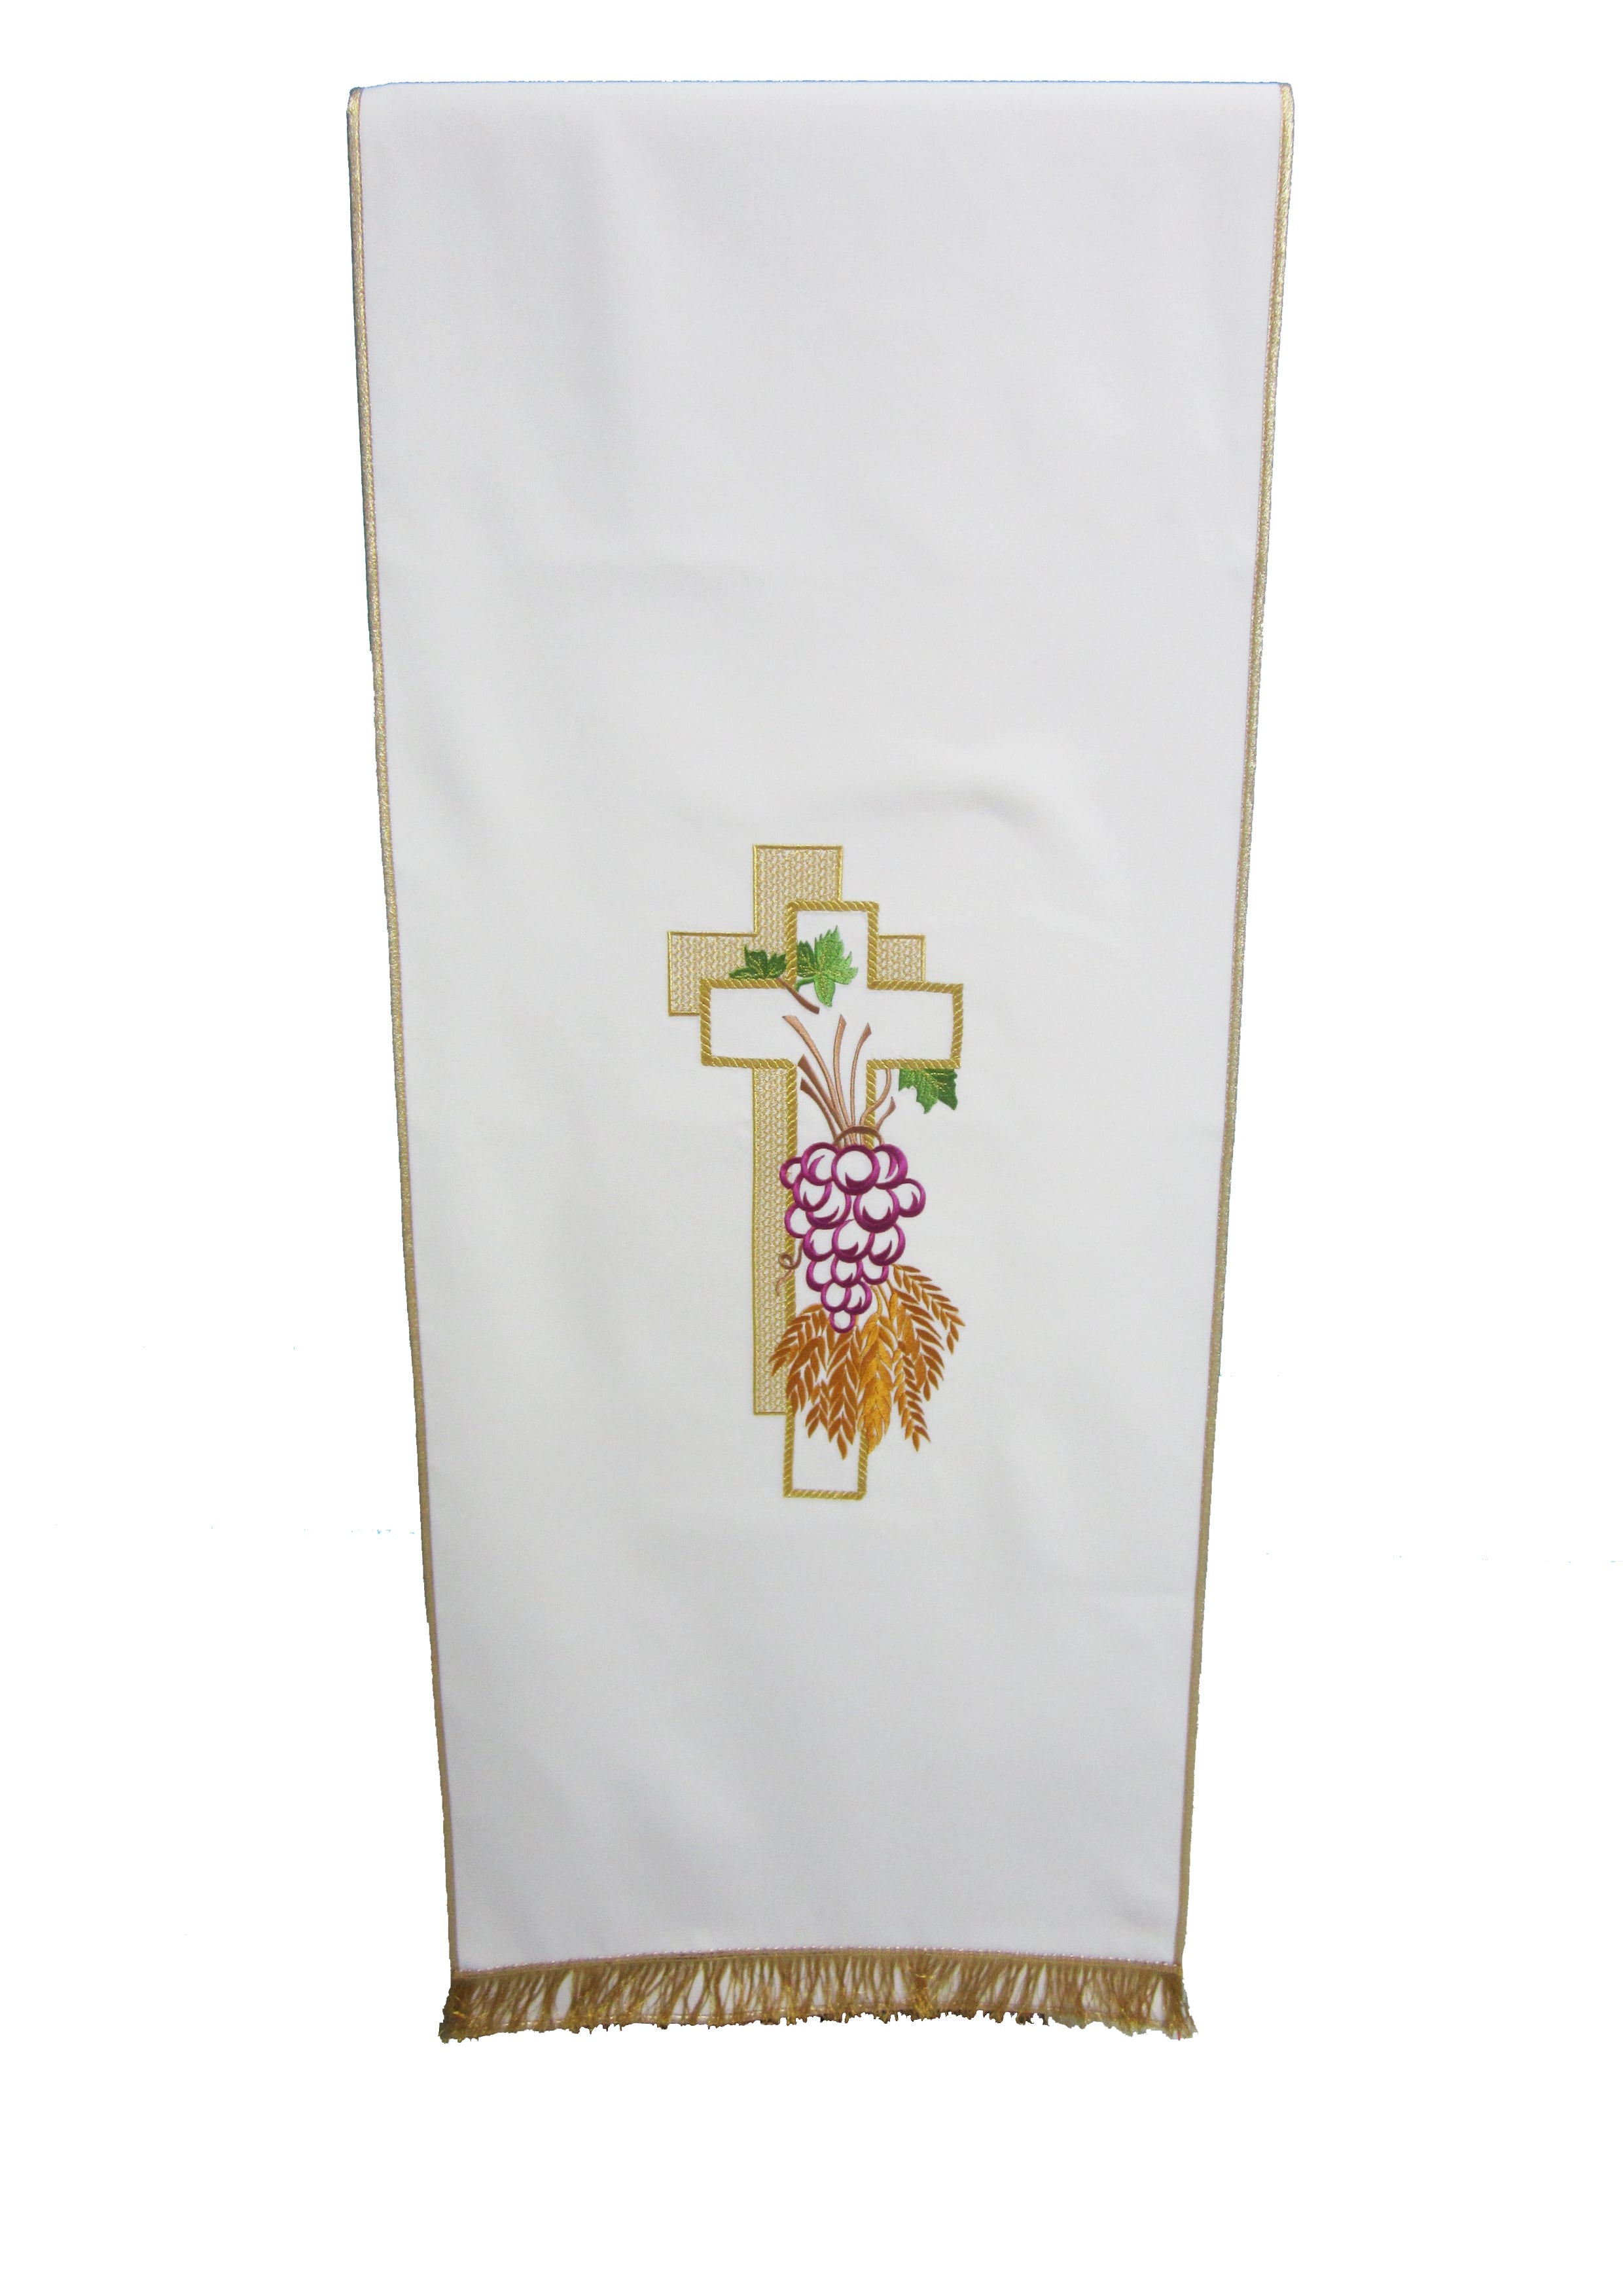 Coprileggio Liturgico bianco con croce doppia dorata uva e spighe in poliestere